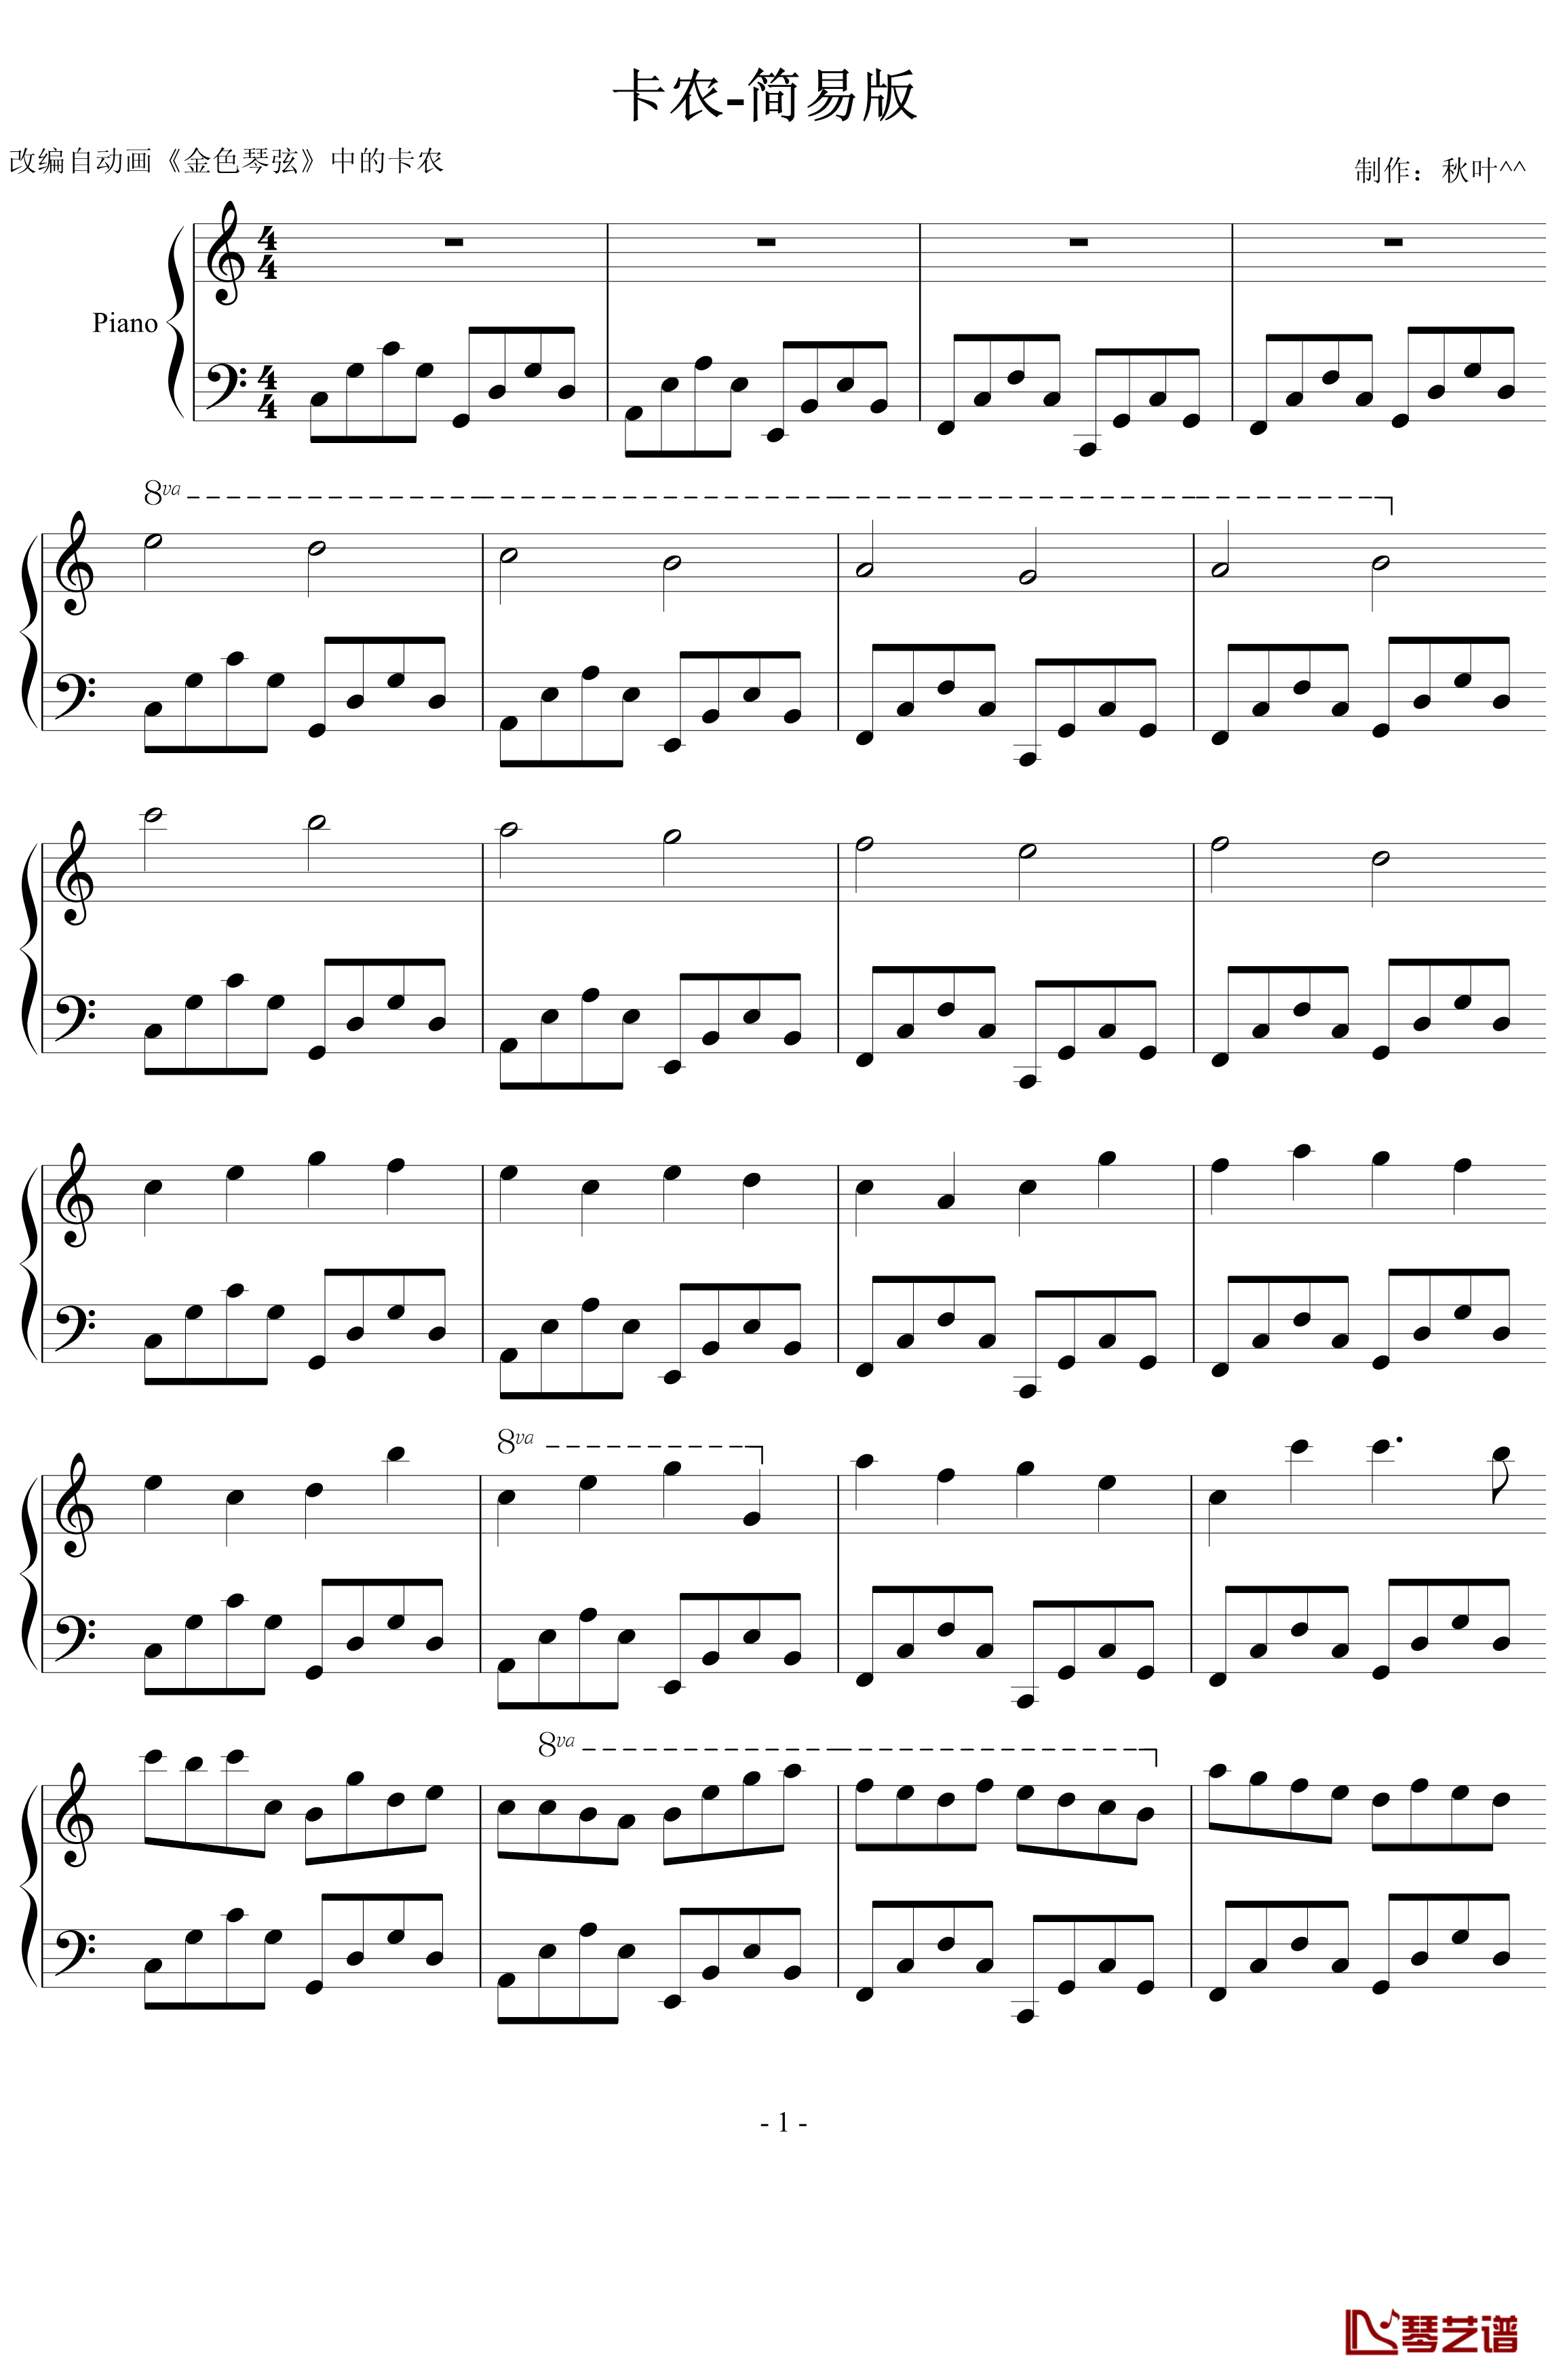 卡农钢琴谱-简易版-帕赫贝尔-Pachelbel1